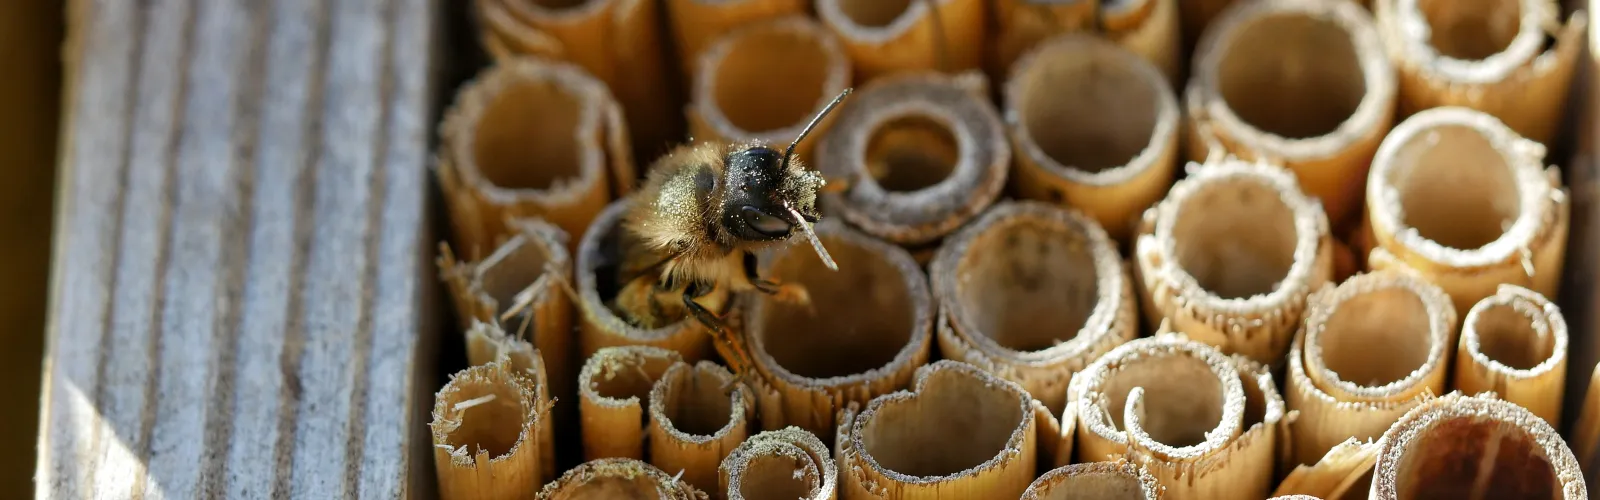 bee bug hotel sustainable